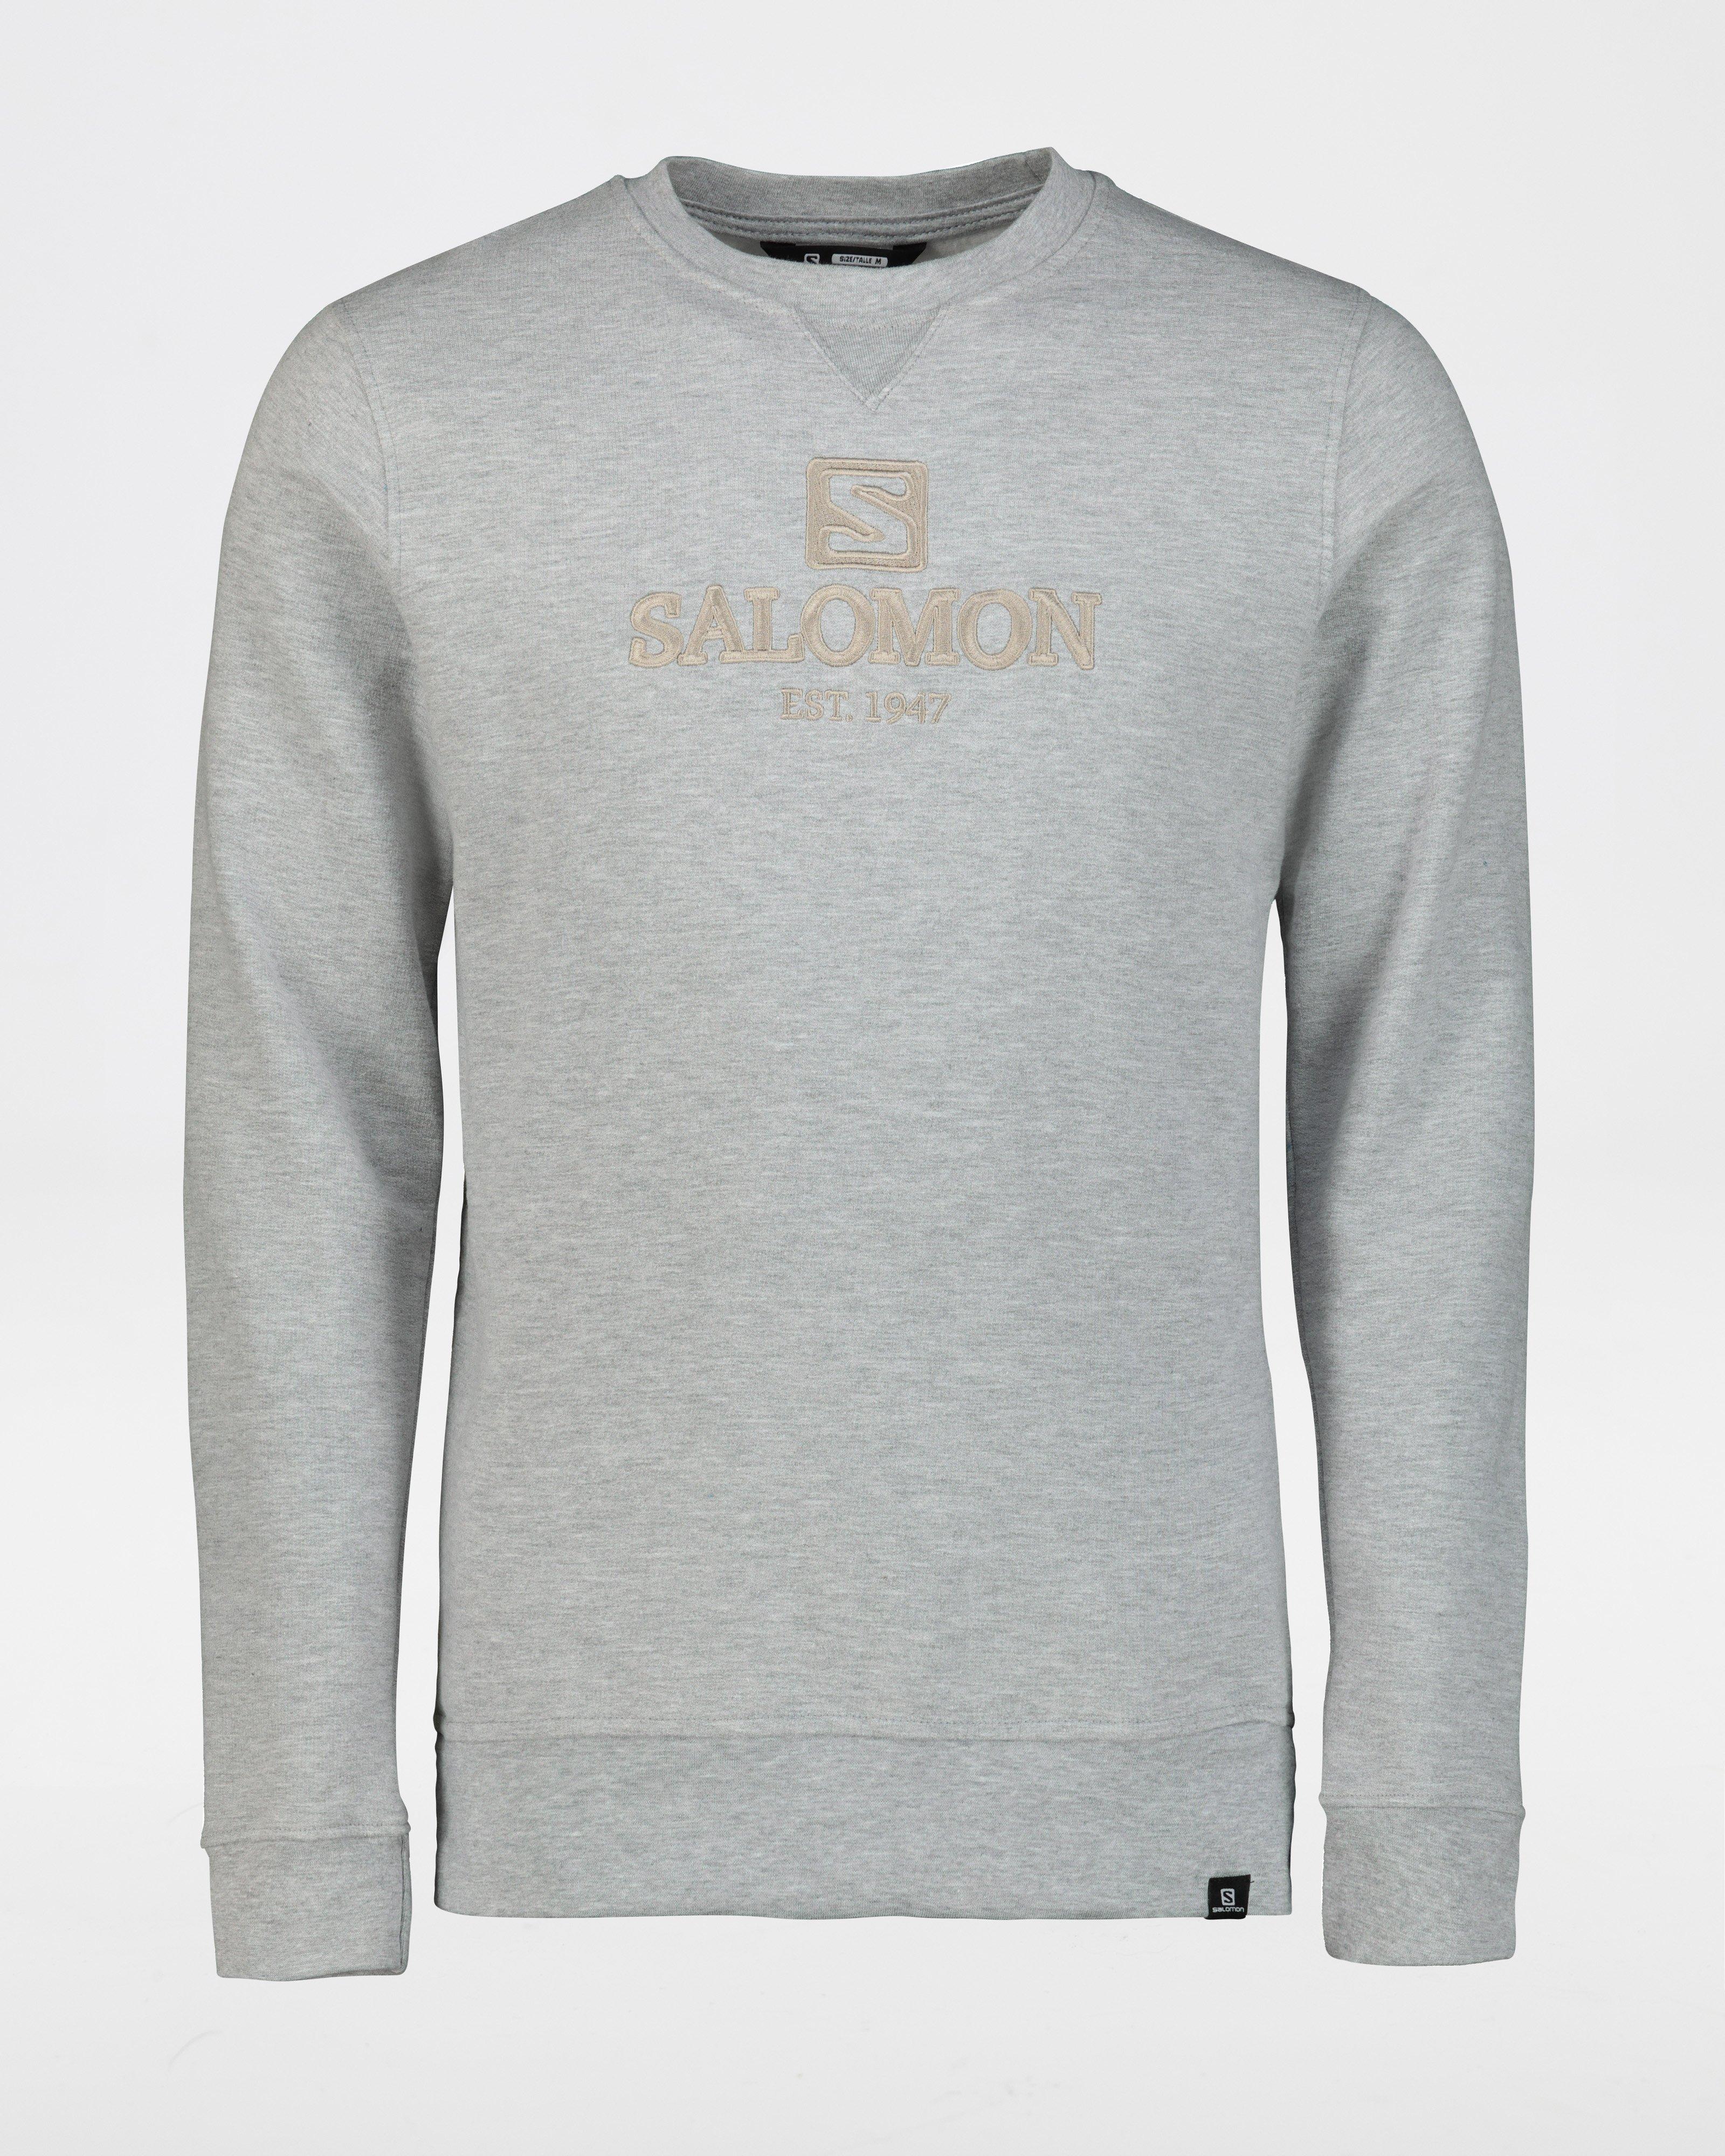 Salomon Men's A-Class Pullover -  Grey